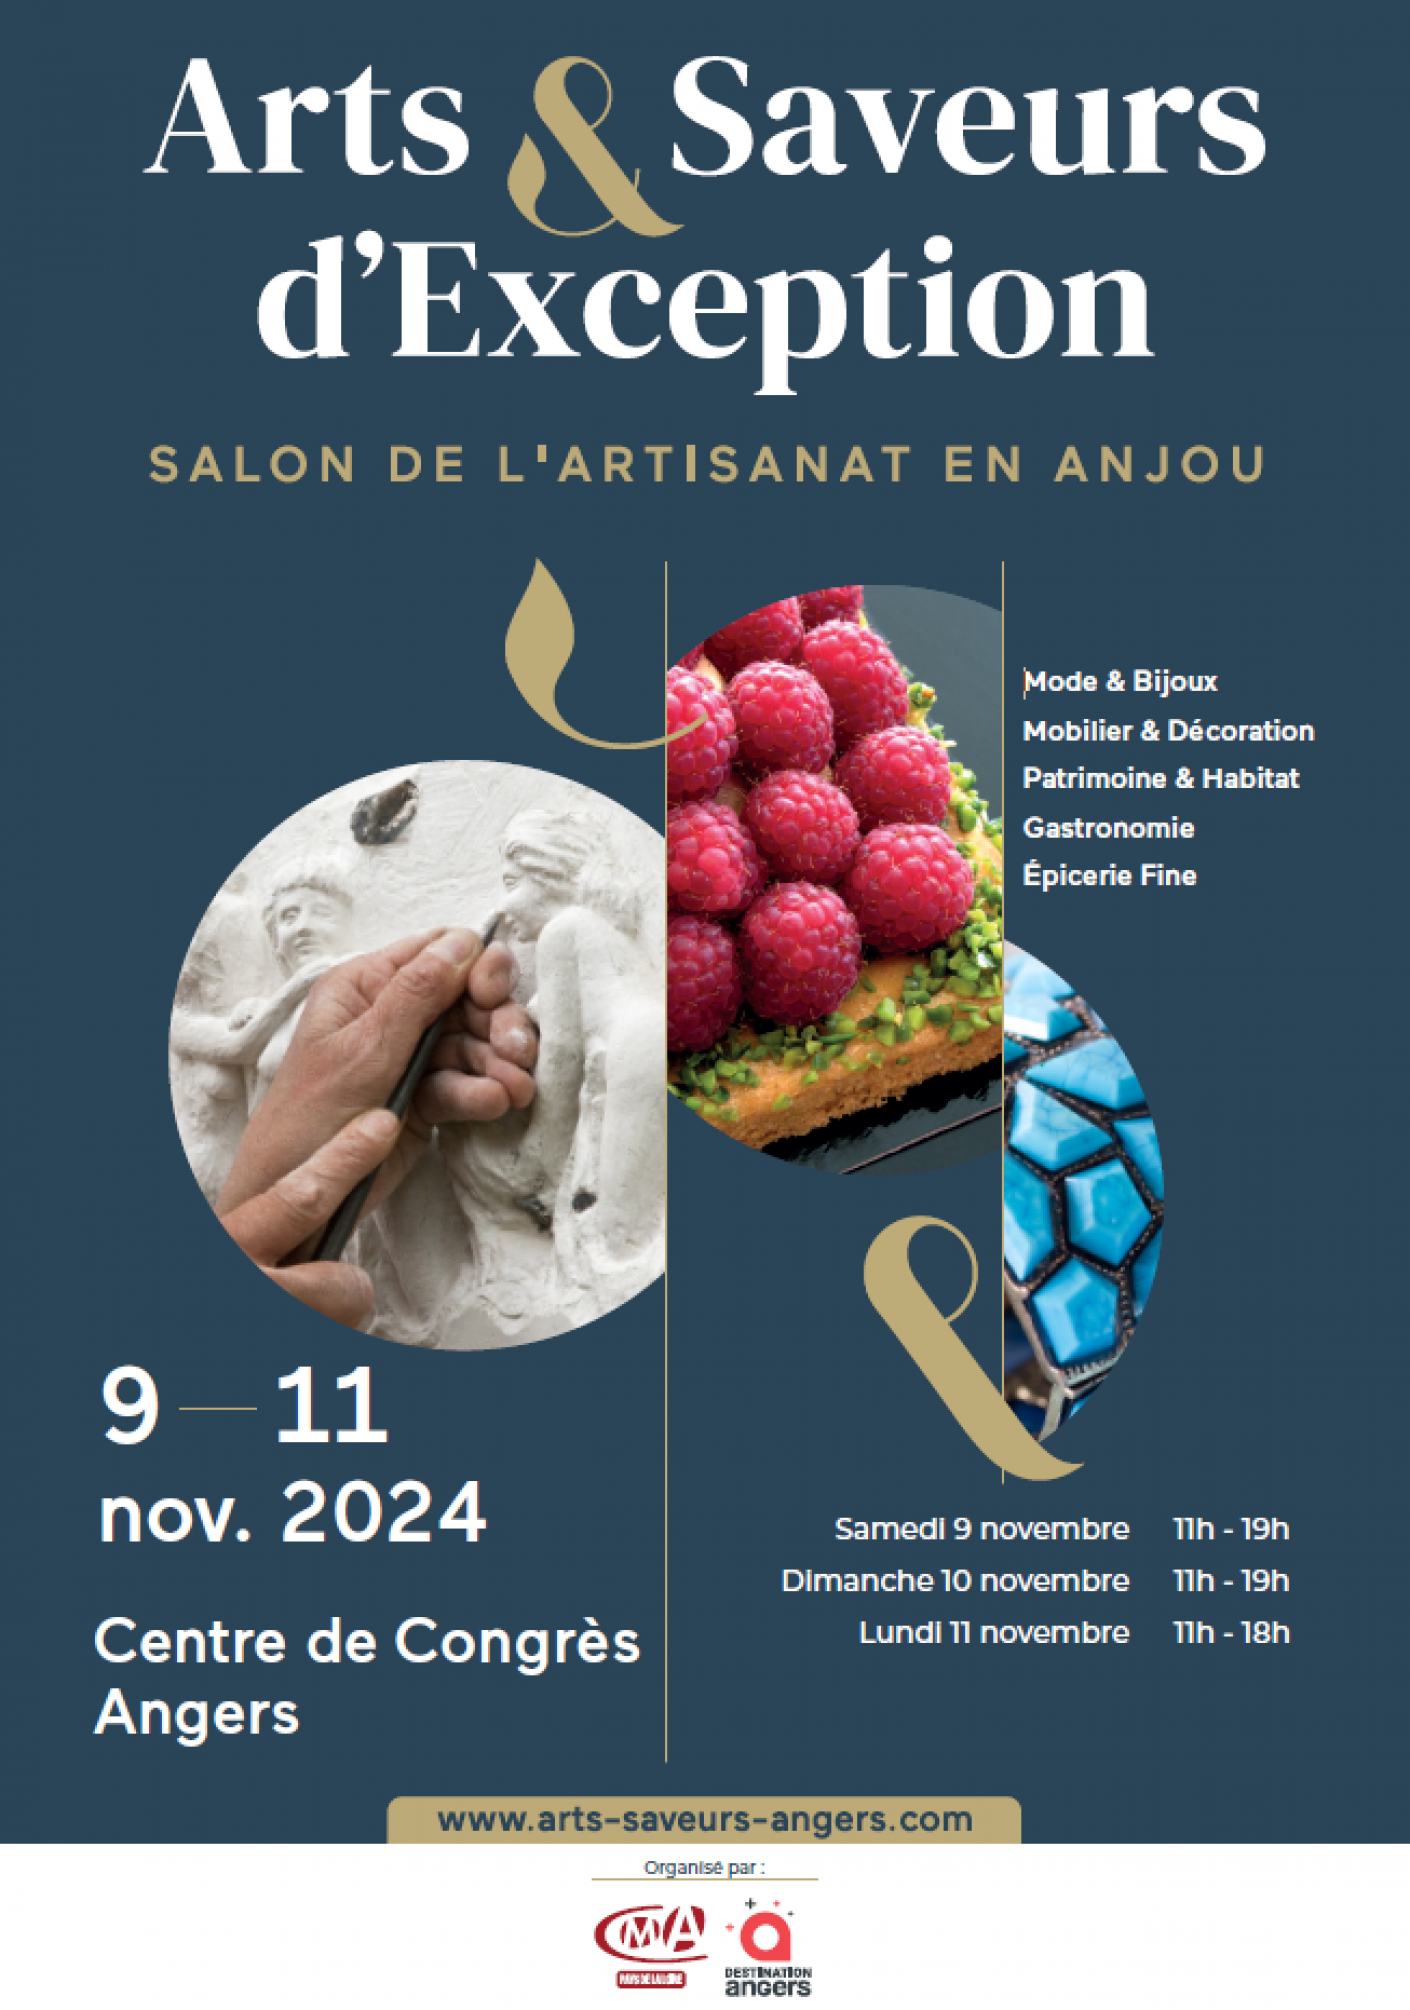 Salon "Arts & Saveurs d'Exception"